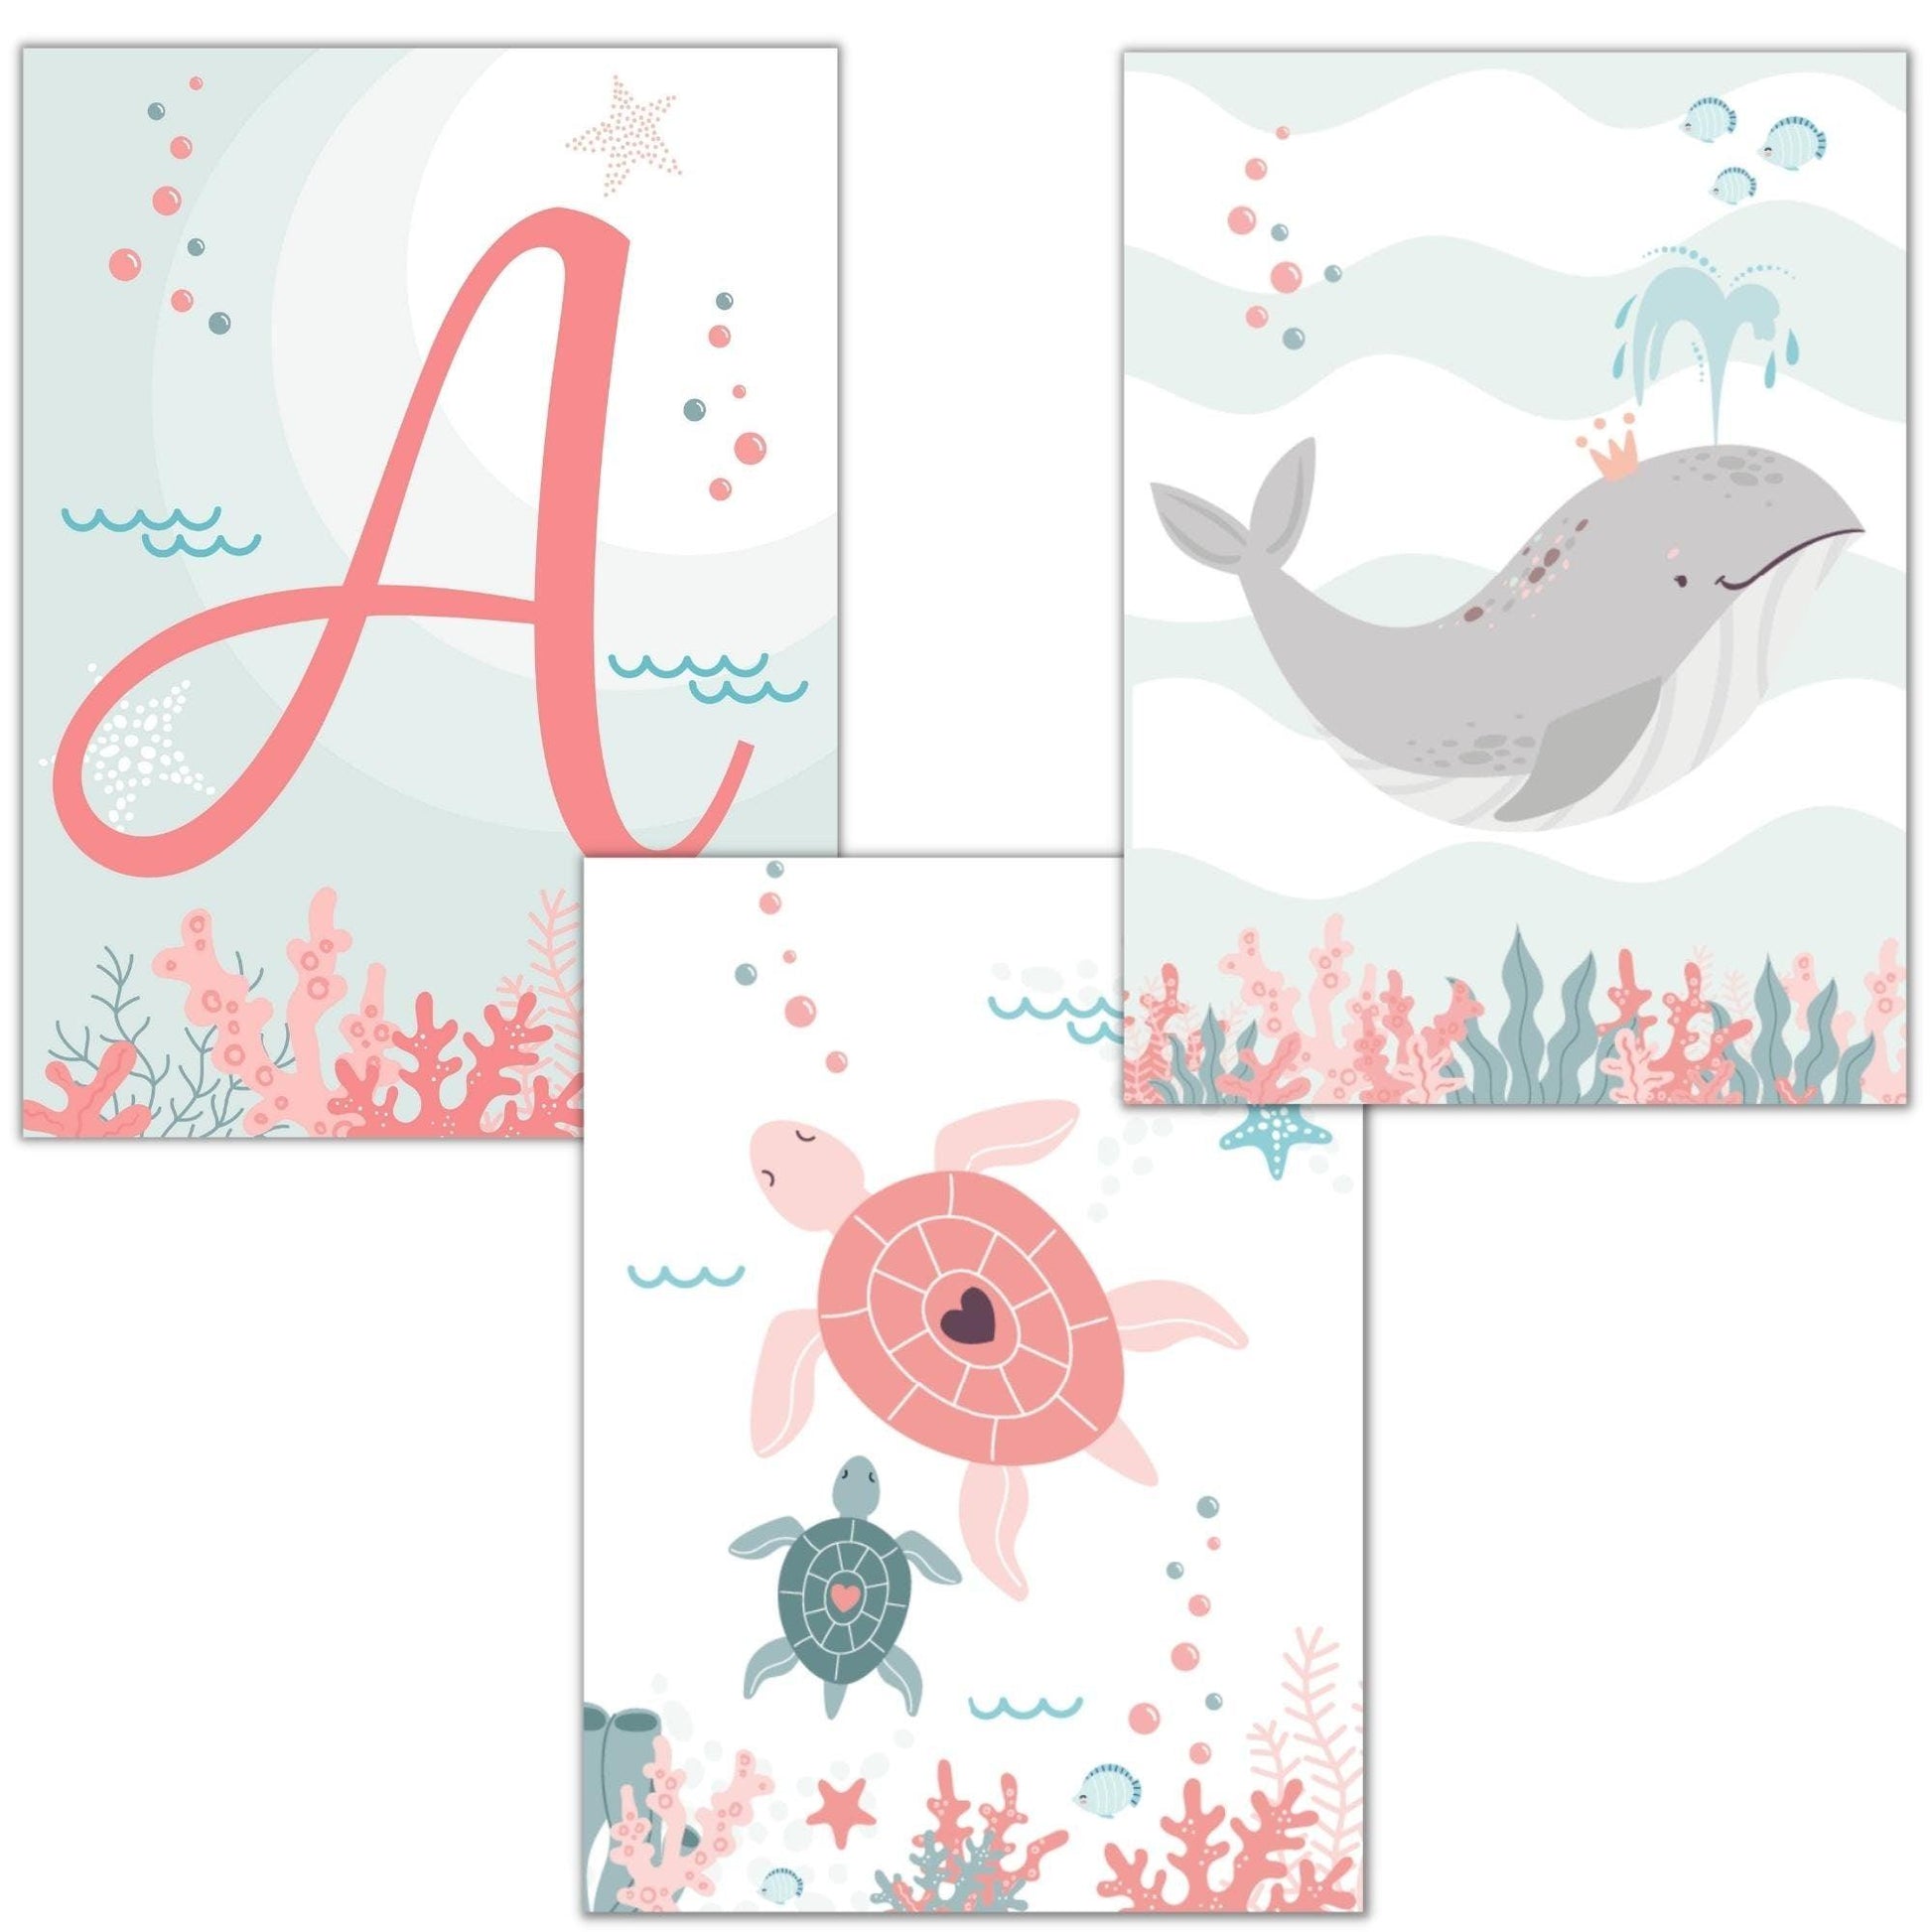 Baleine tortue  et lettre de prénom ocean - chambre enfant bébé - 3 affiches personnalisées Decoration - idee cadeau anniversaire naissance - Imagine.affiche